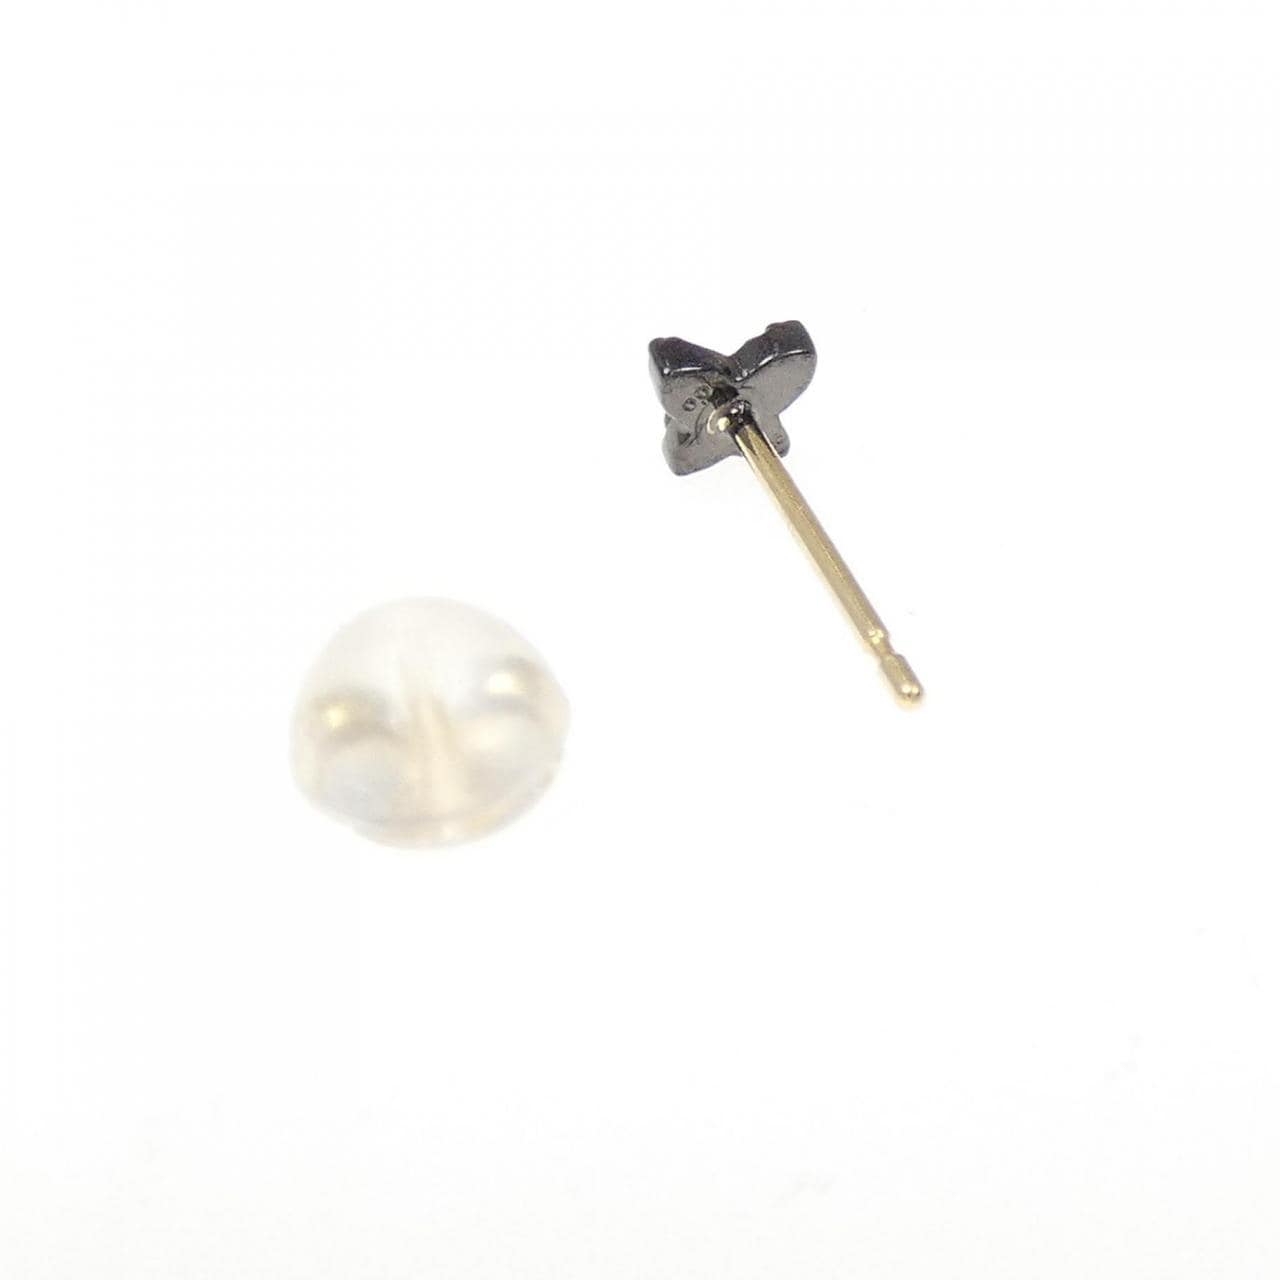 [BRAND NEW] K18BG/K18 Diamond Earrings, One Ear, 0.02CT